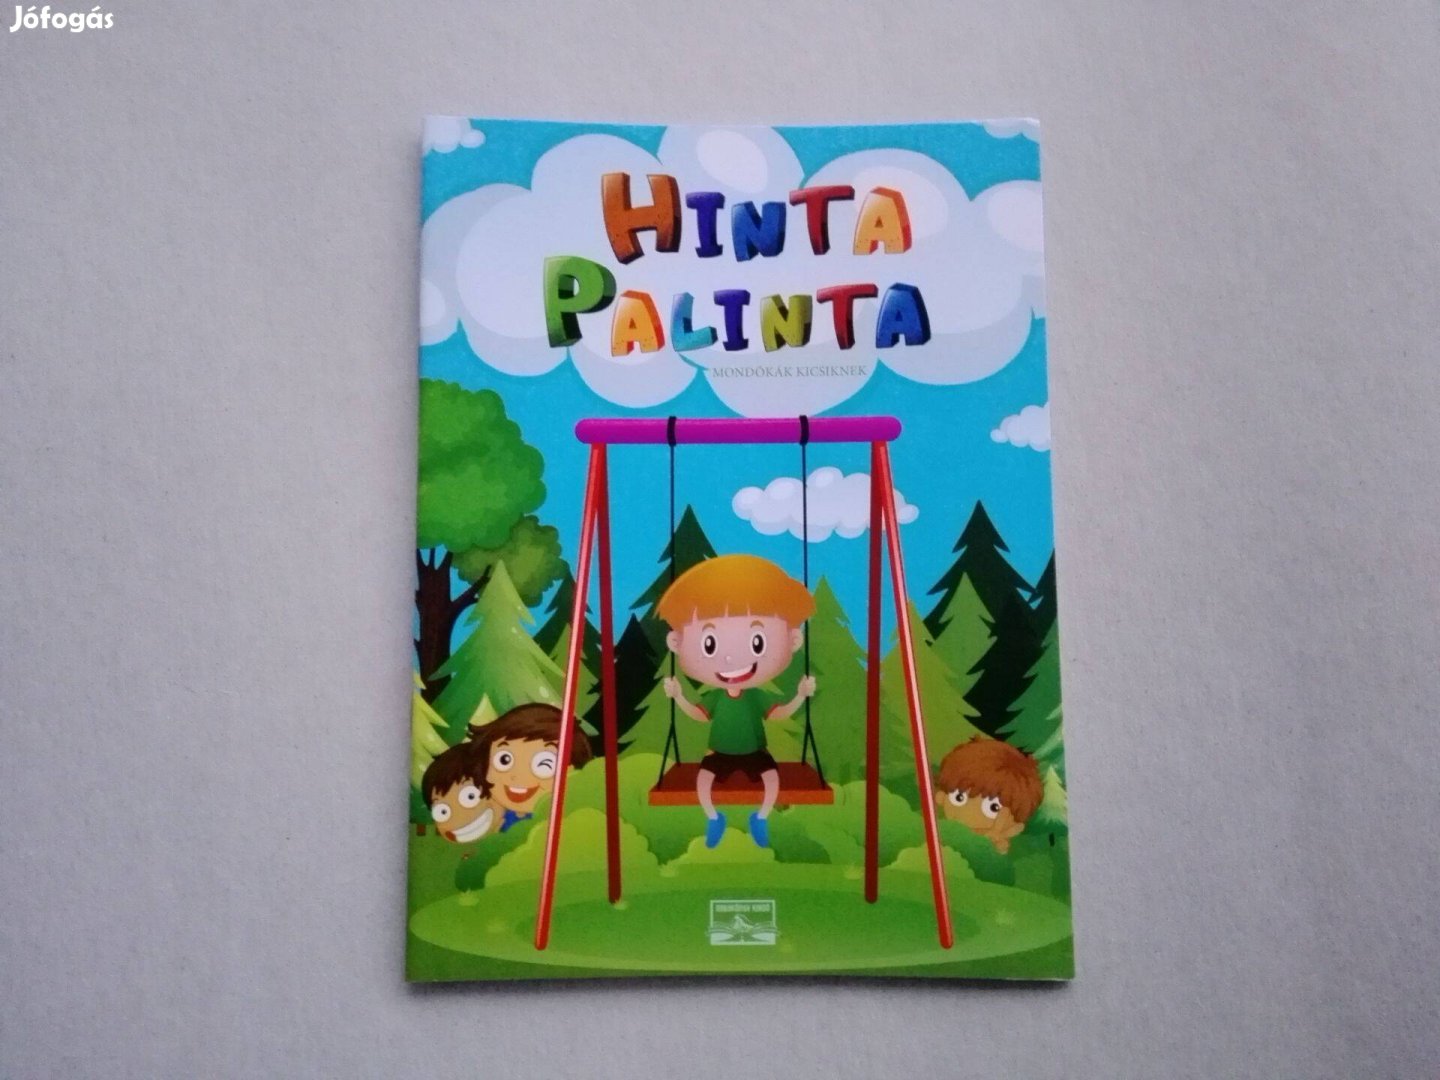 Hinta Palinta-mondókák kicsiknek - teljesen Új könyv akciósan eladó!